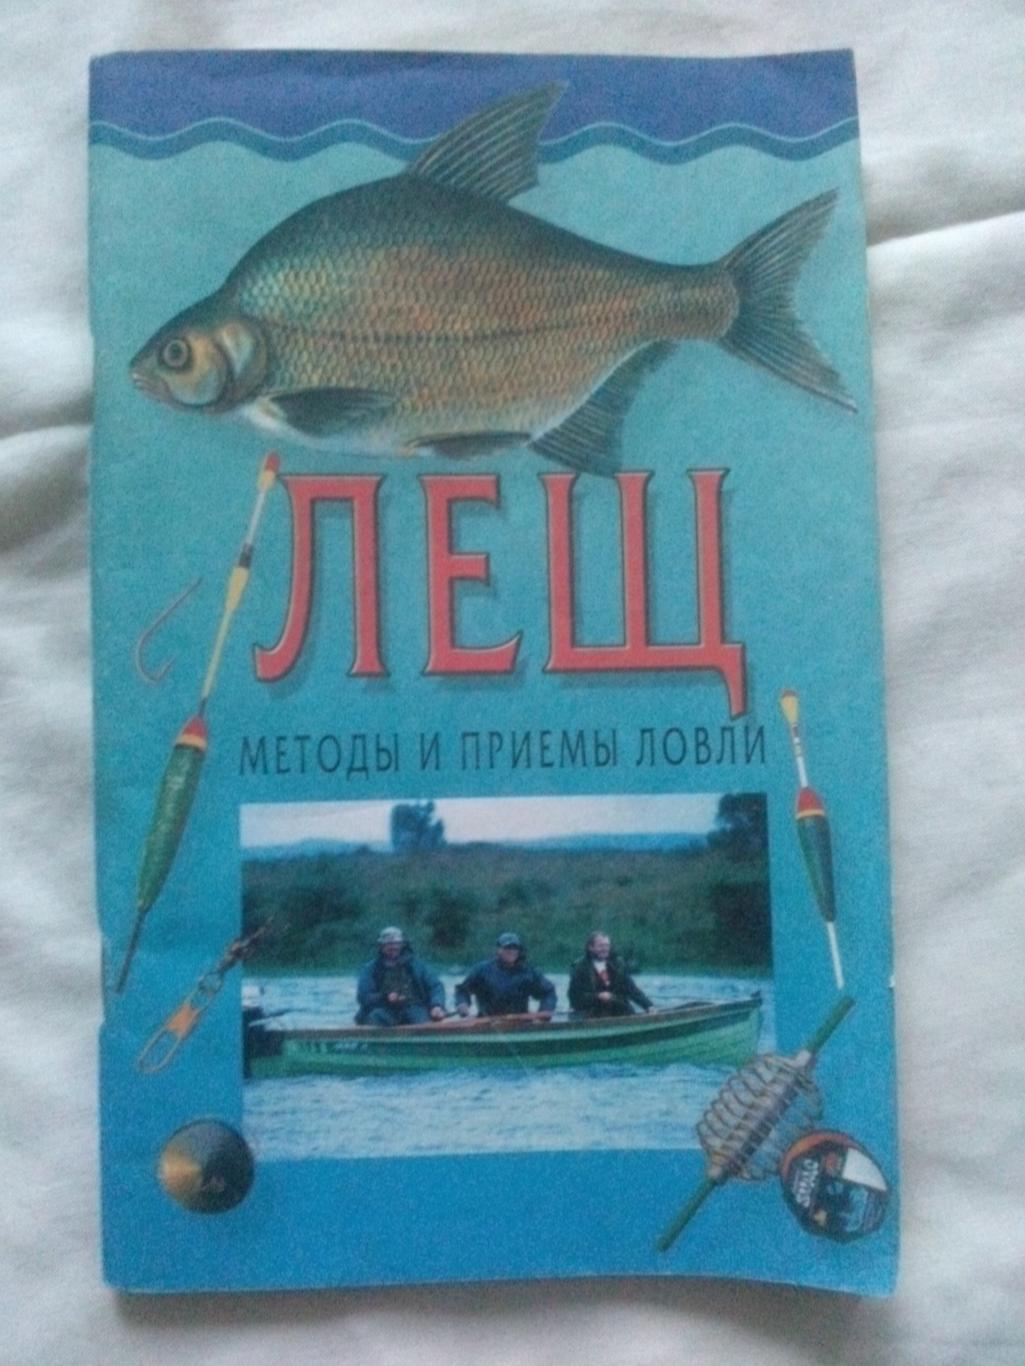 Лещ : методы и приемы ловли (2002 г. ) Рыбалка , рыболов , рыболовство , рыбак